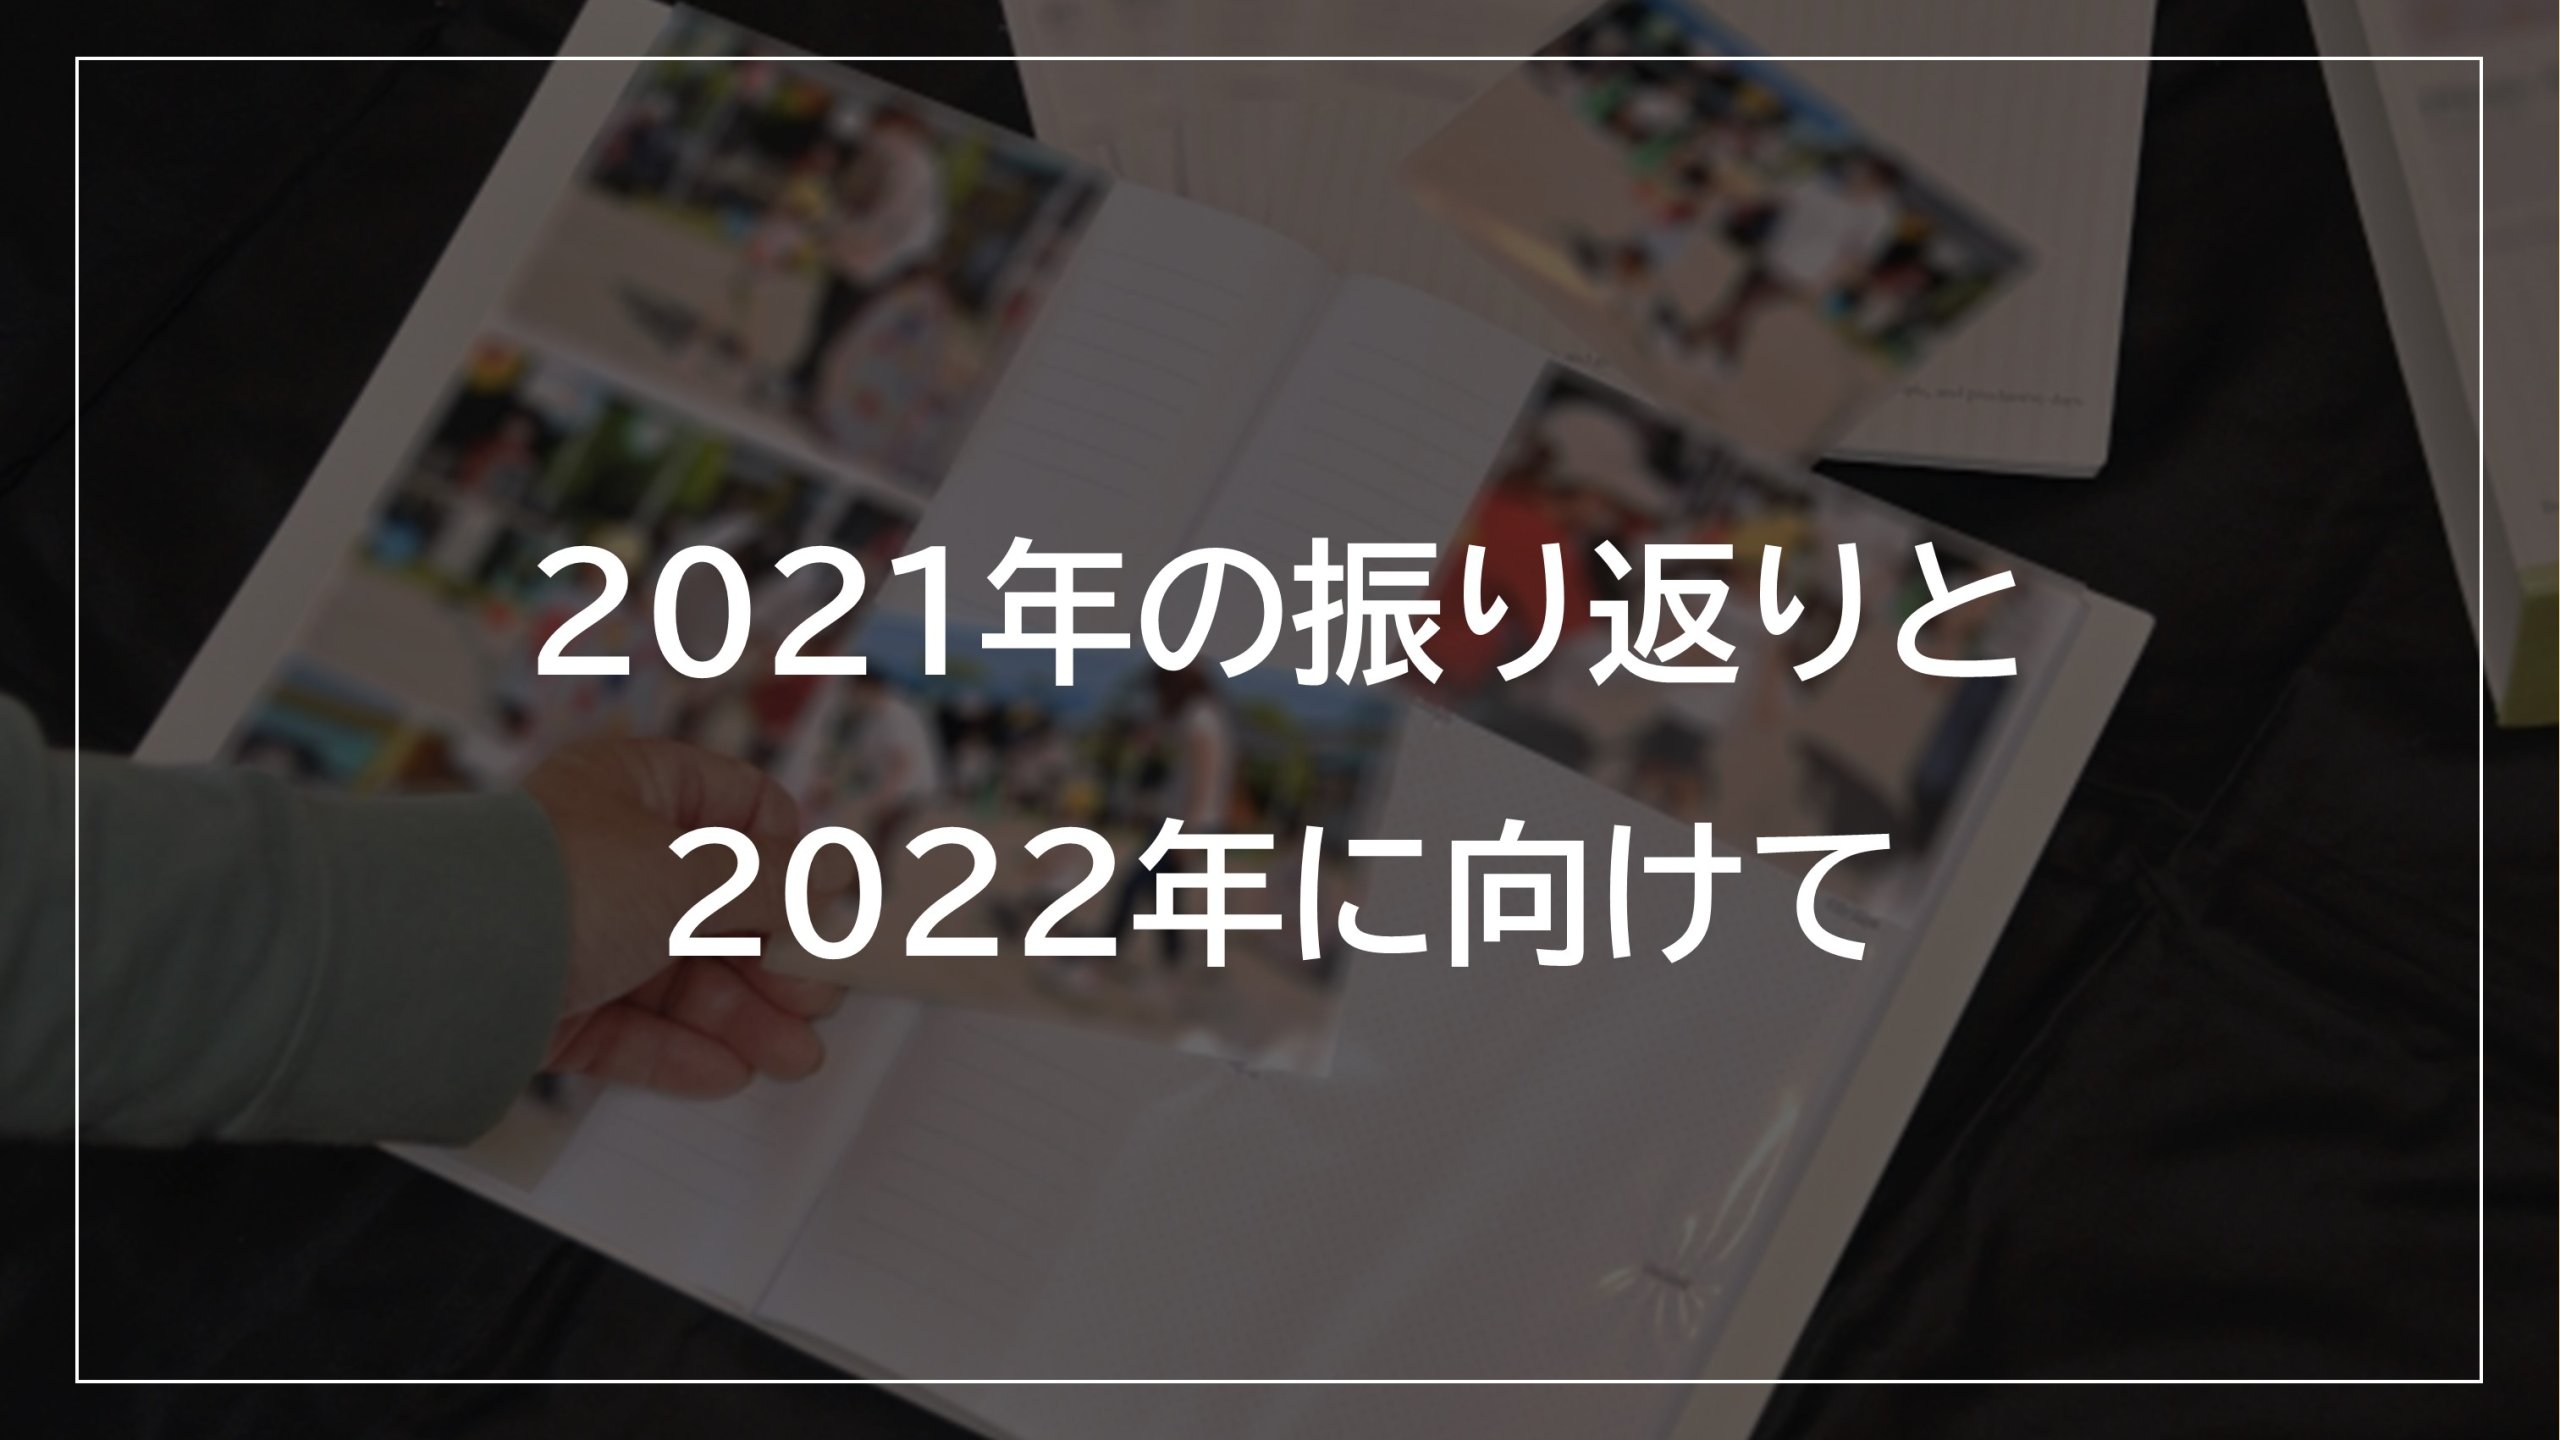 「2021年の振り返りと2022年に向けて」のアイキャッチ画像